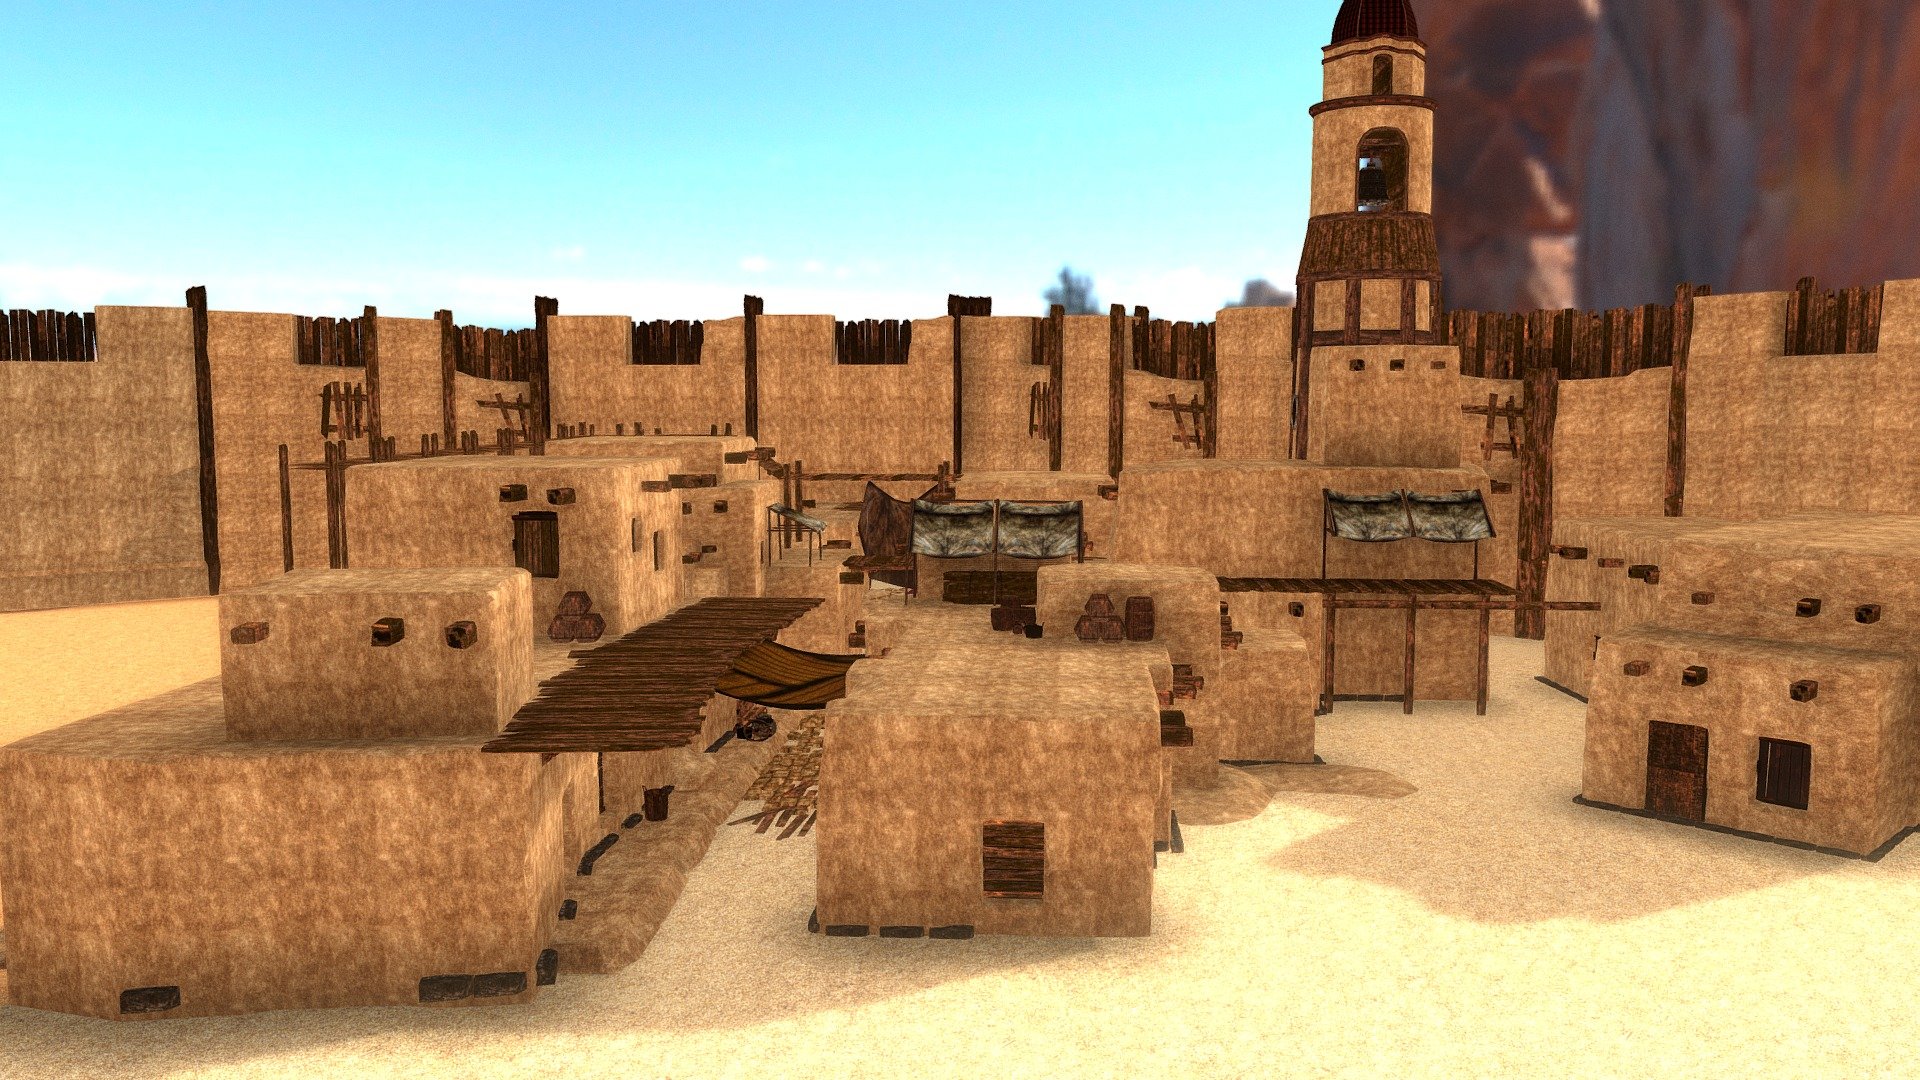 Fantasy: Low Poly Desert Town - 3D model by emijar 3d model